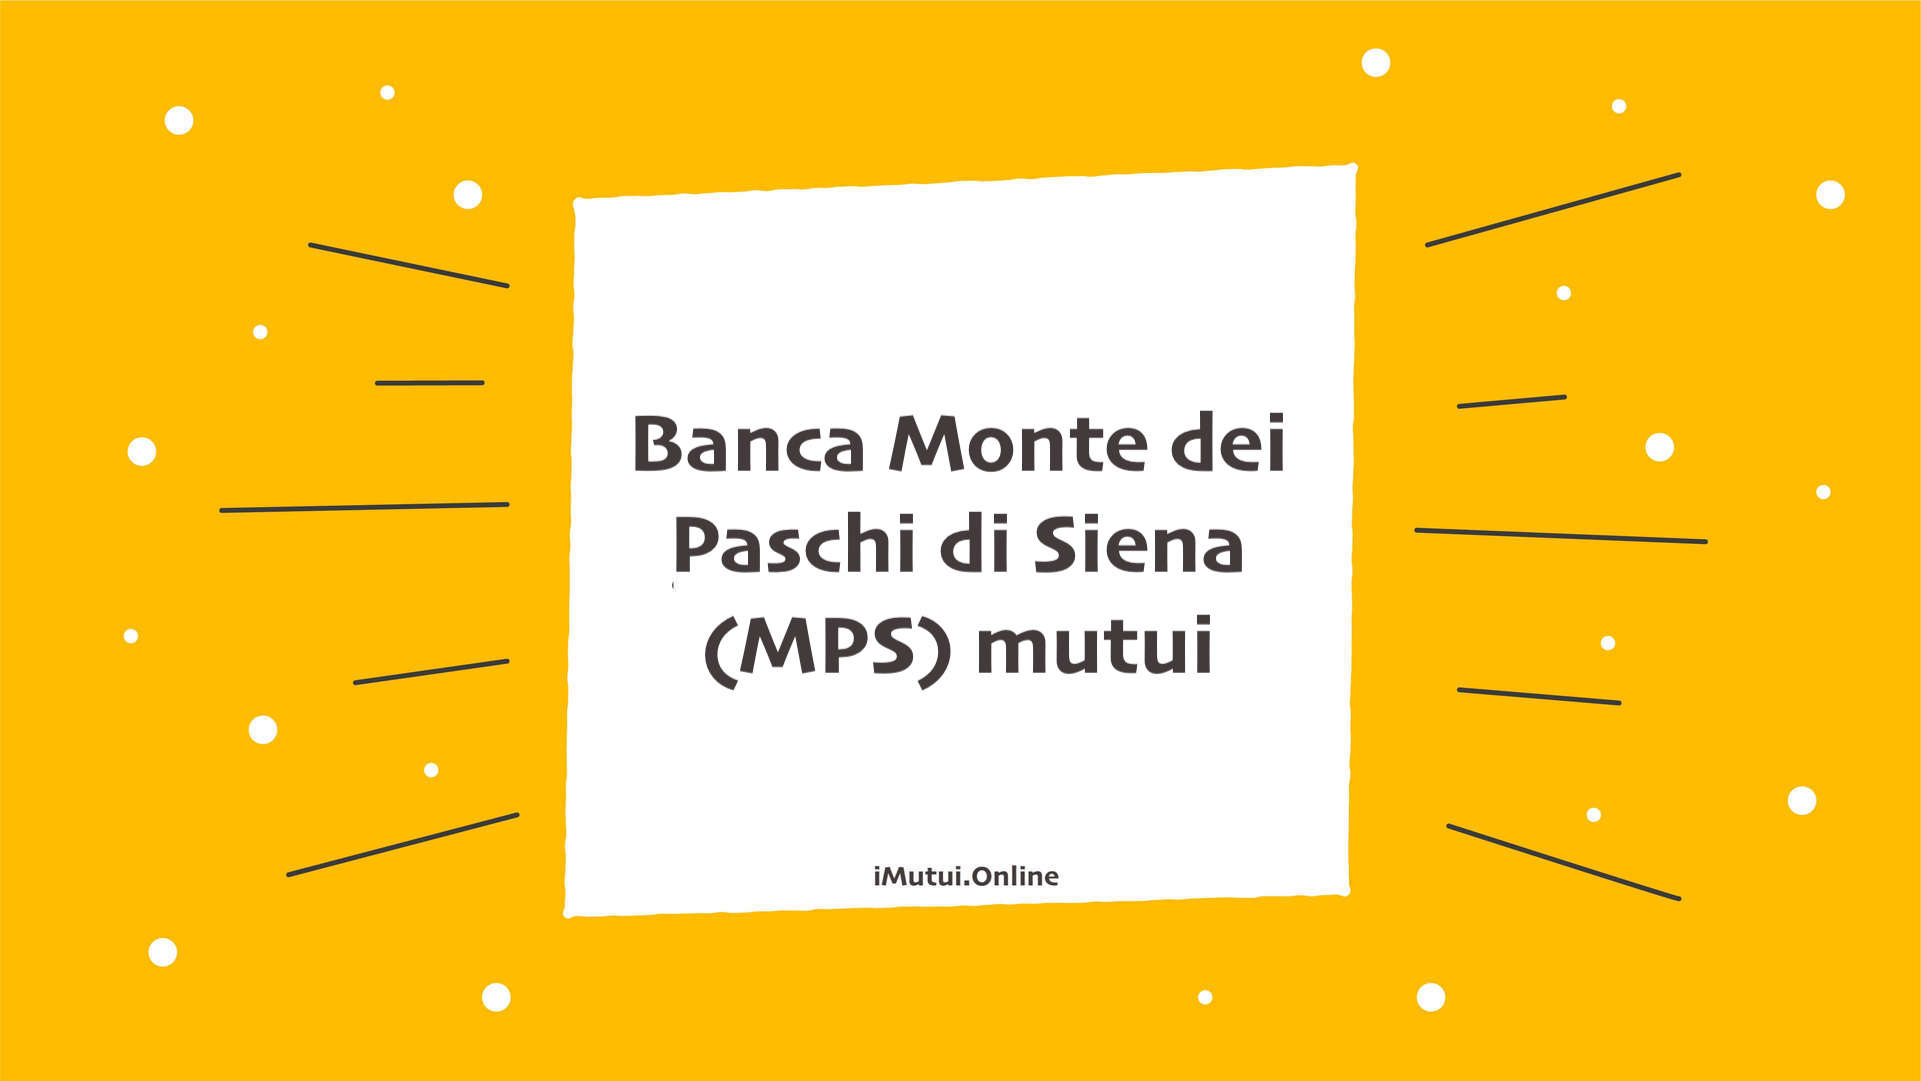 Banca Monte dei Paschi di Siena (MPS) mutui